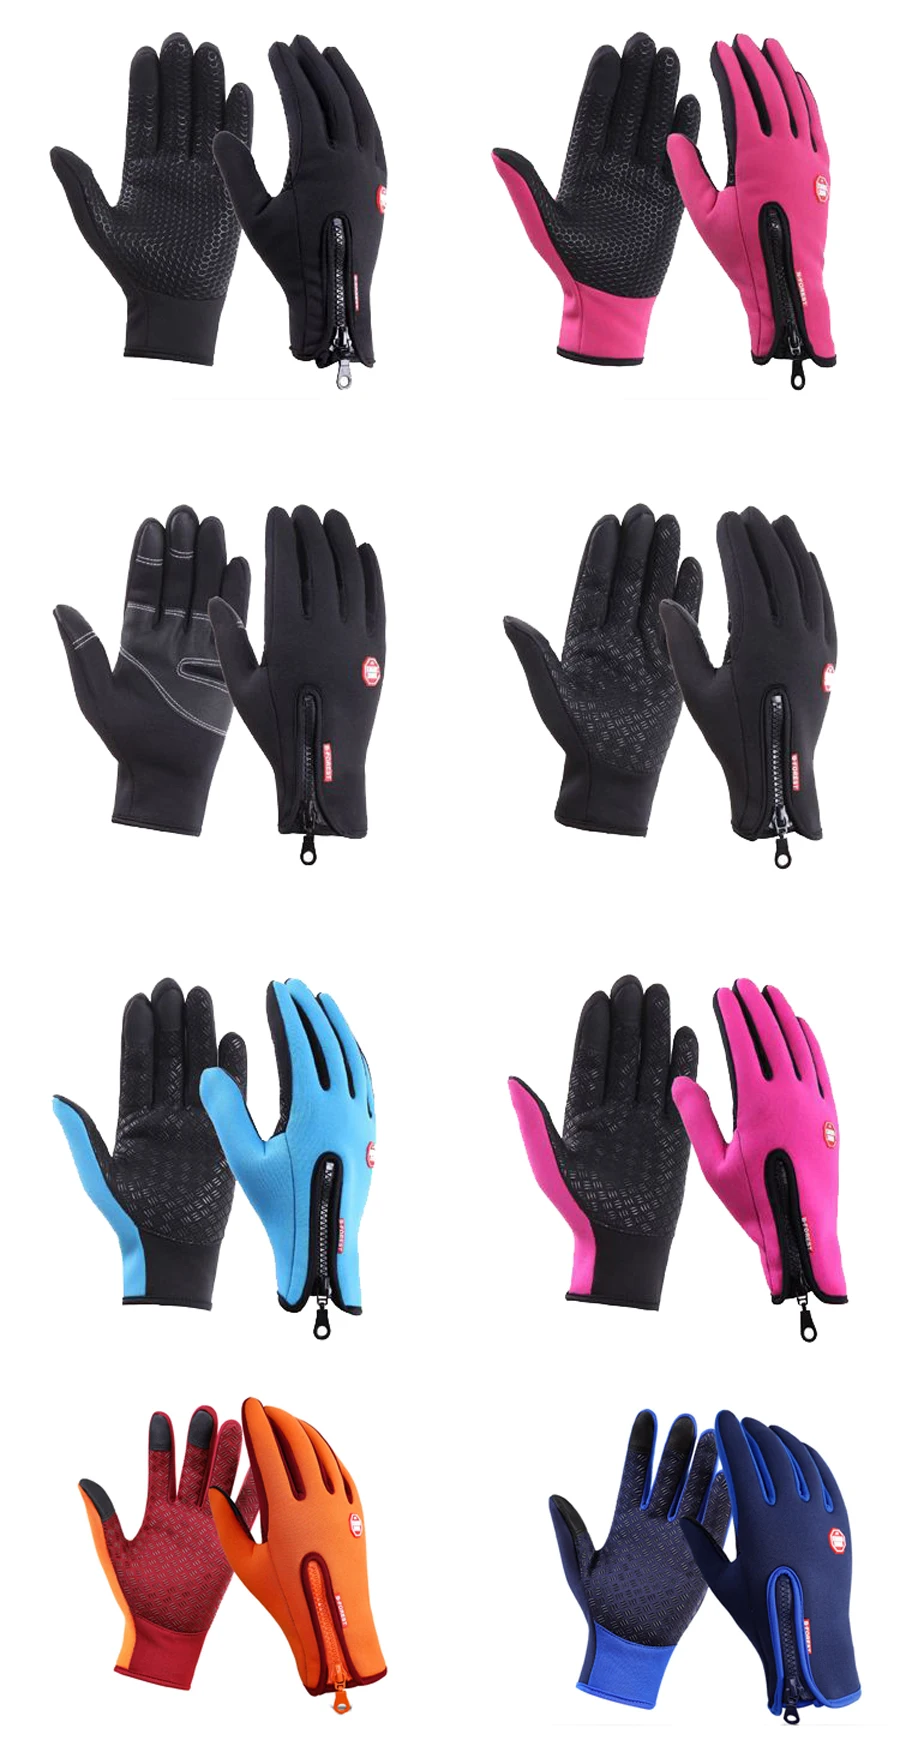 NEWBOLER уличные спортивные велосипедные перчатки из искусственной кожи, водонепроницаемые зимние теплые перчатки для горного велосипеда, велосипедные перчатки для мужчин и женщин